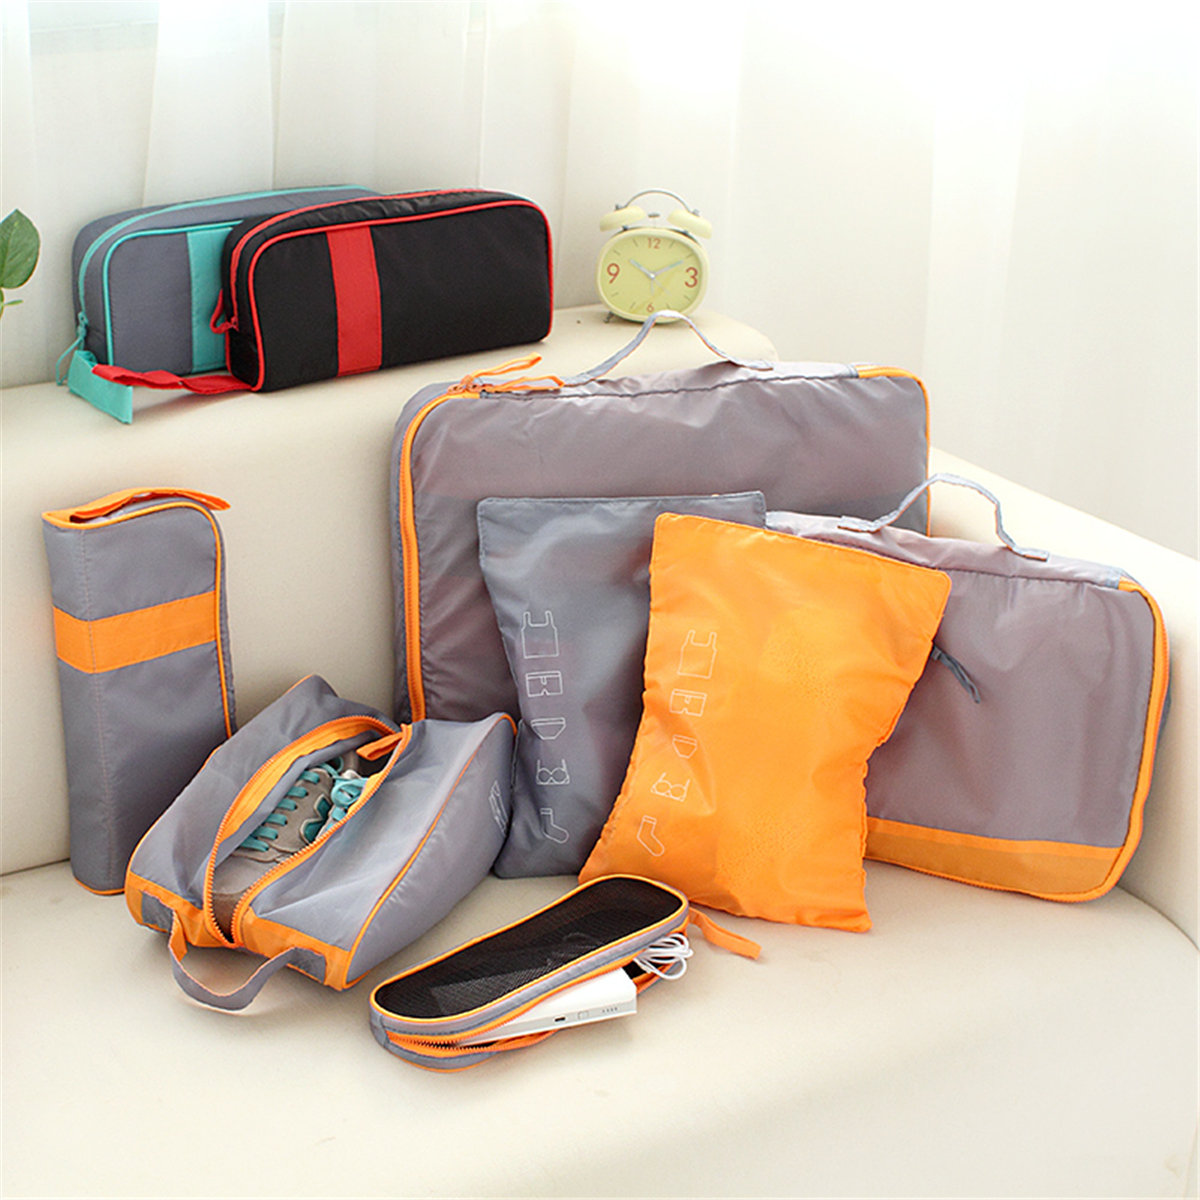 

7Pcs Set Packing Cubes Travel Luggage Organizer, Gray blue black red gray/orange